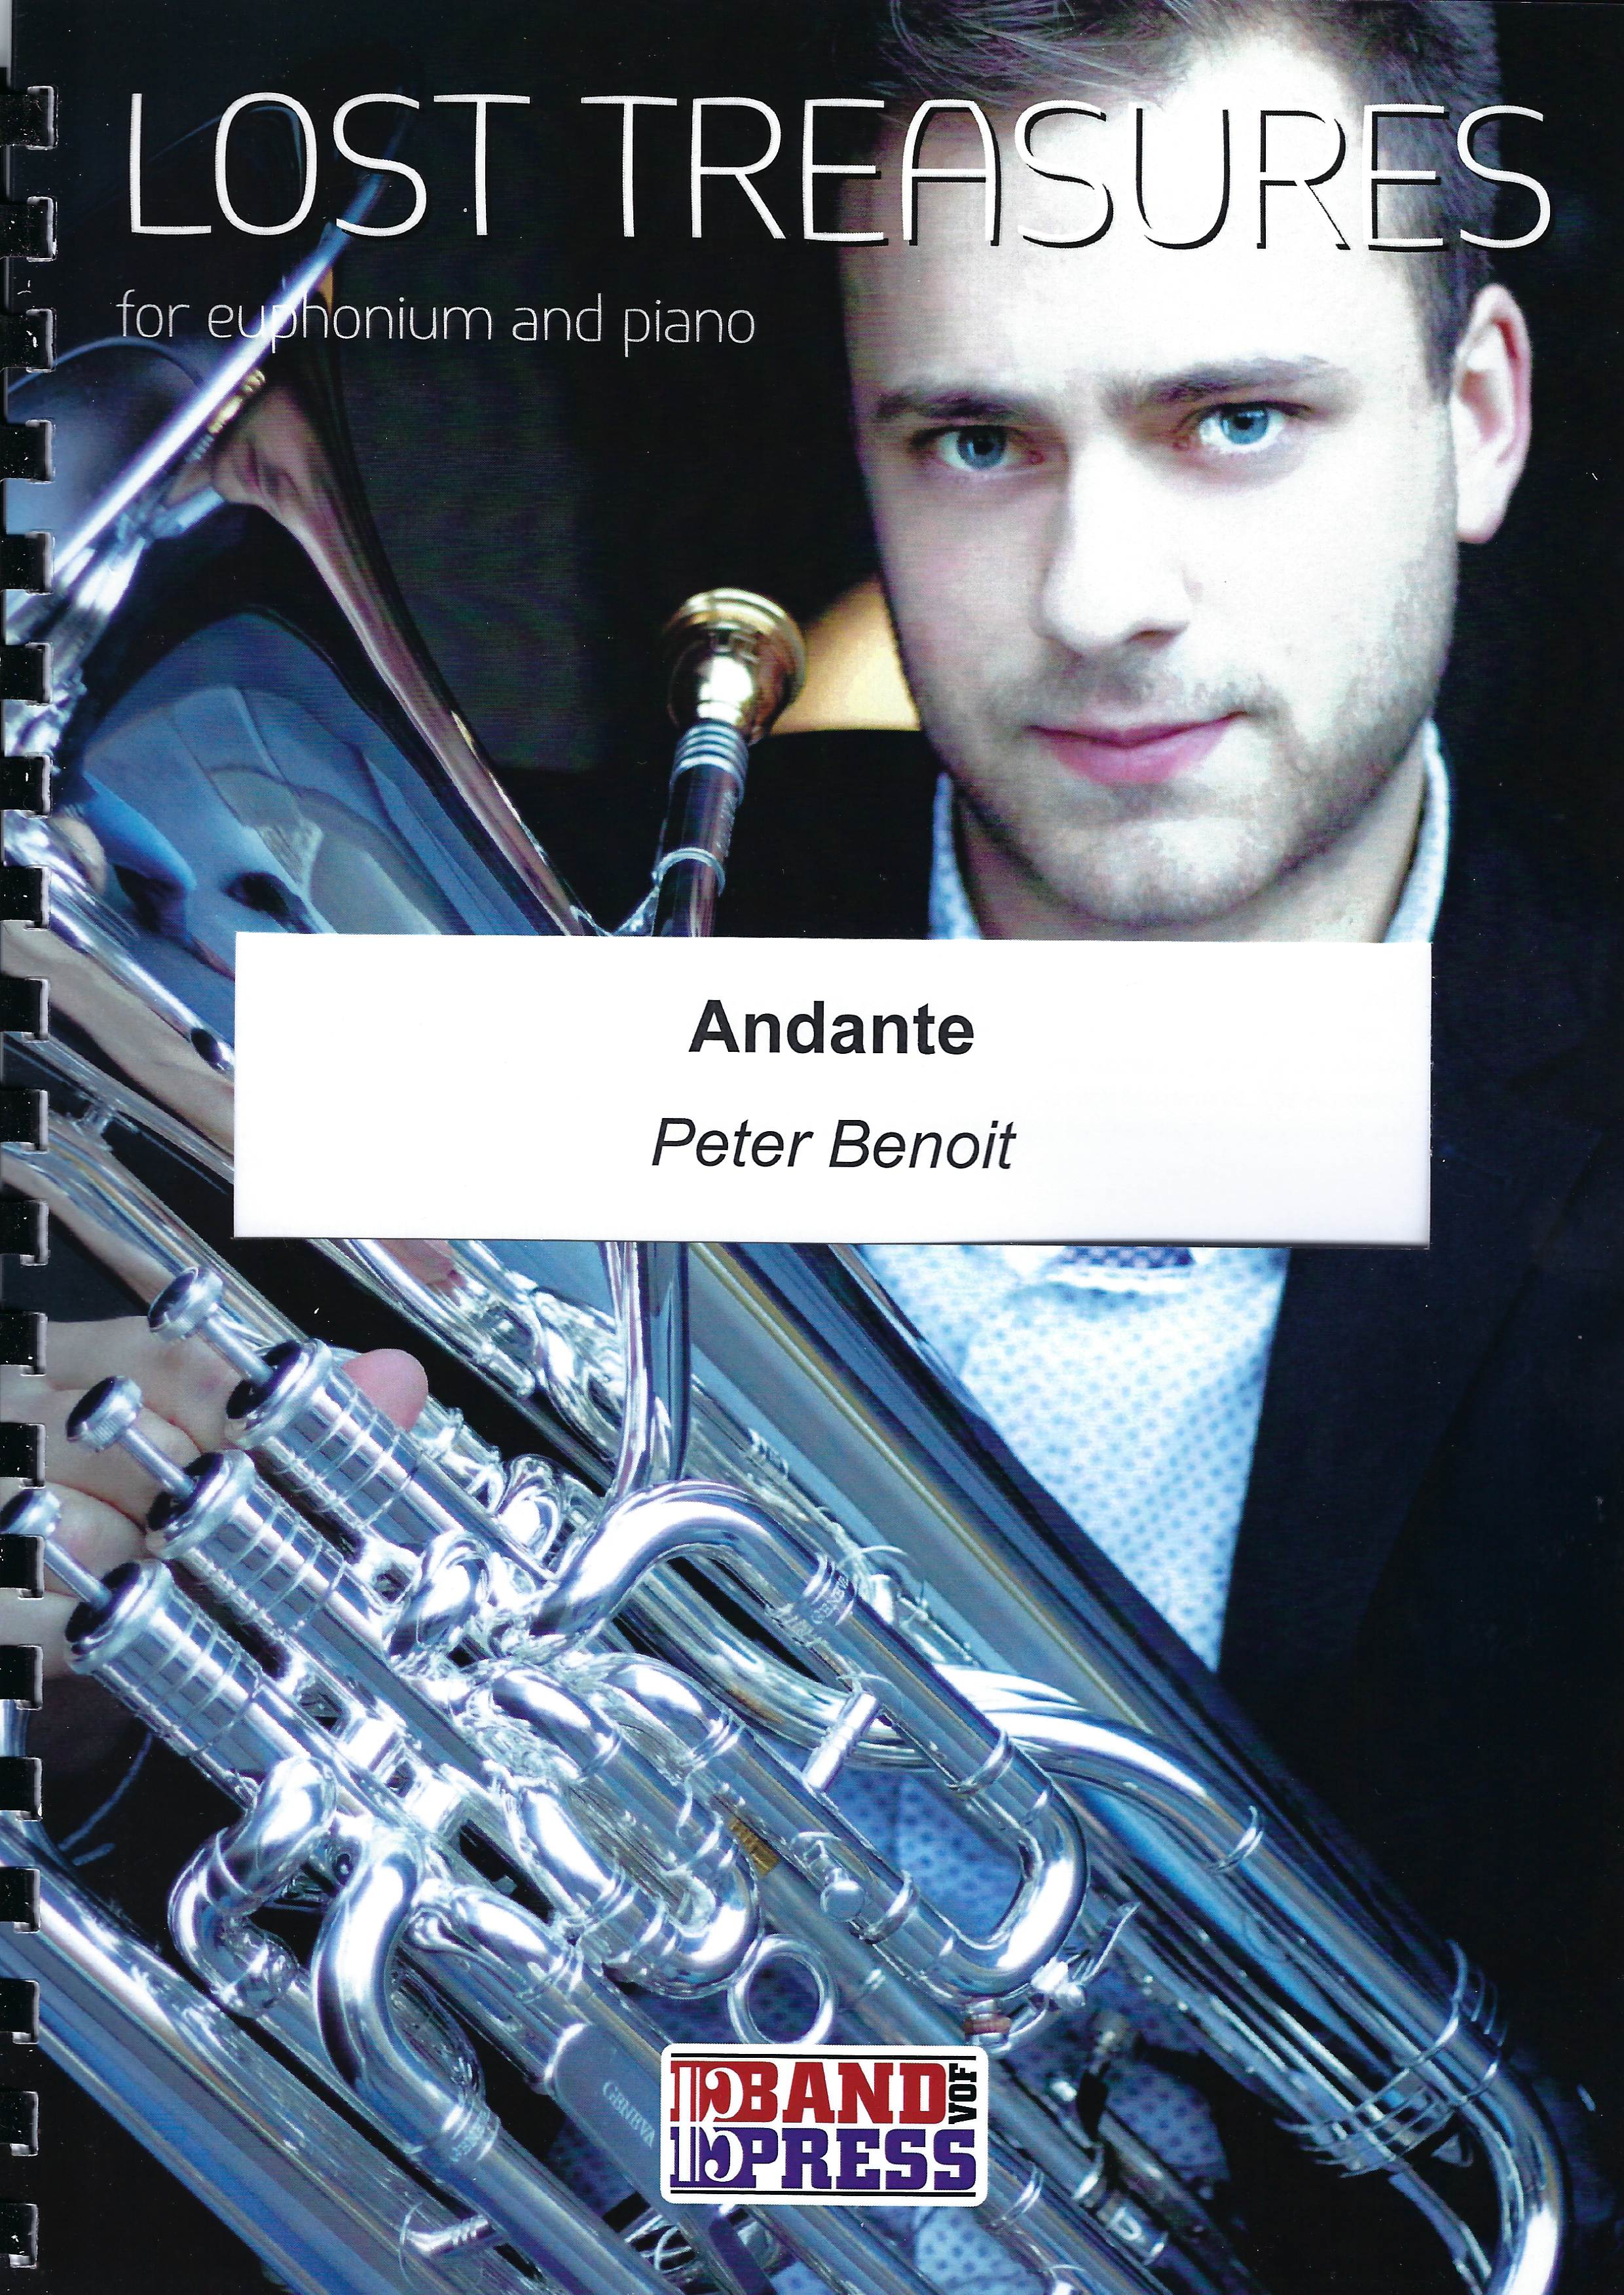 Andante - Peter Benoit - Euph and Piano (Lost Treasures Series)